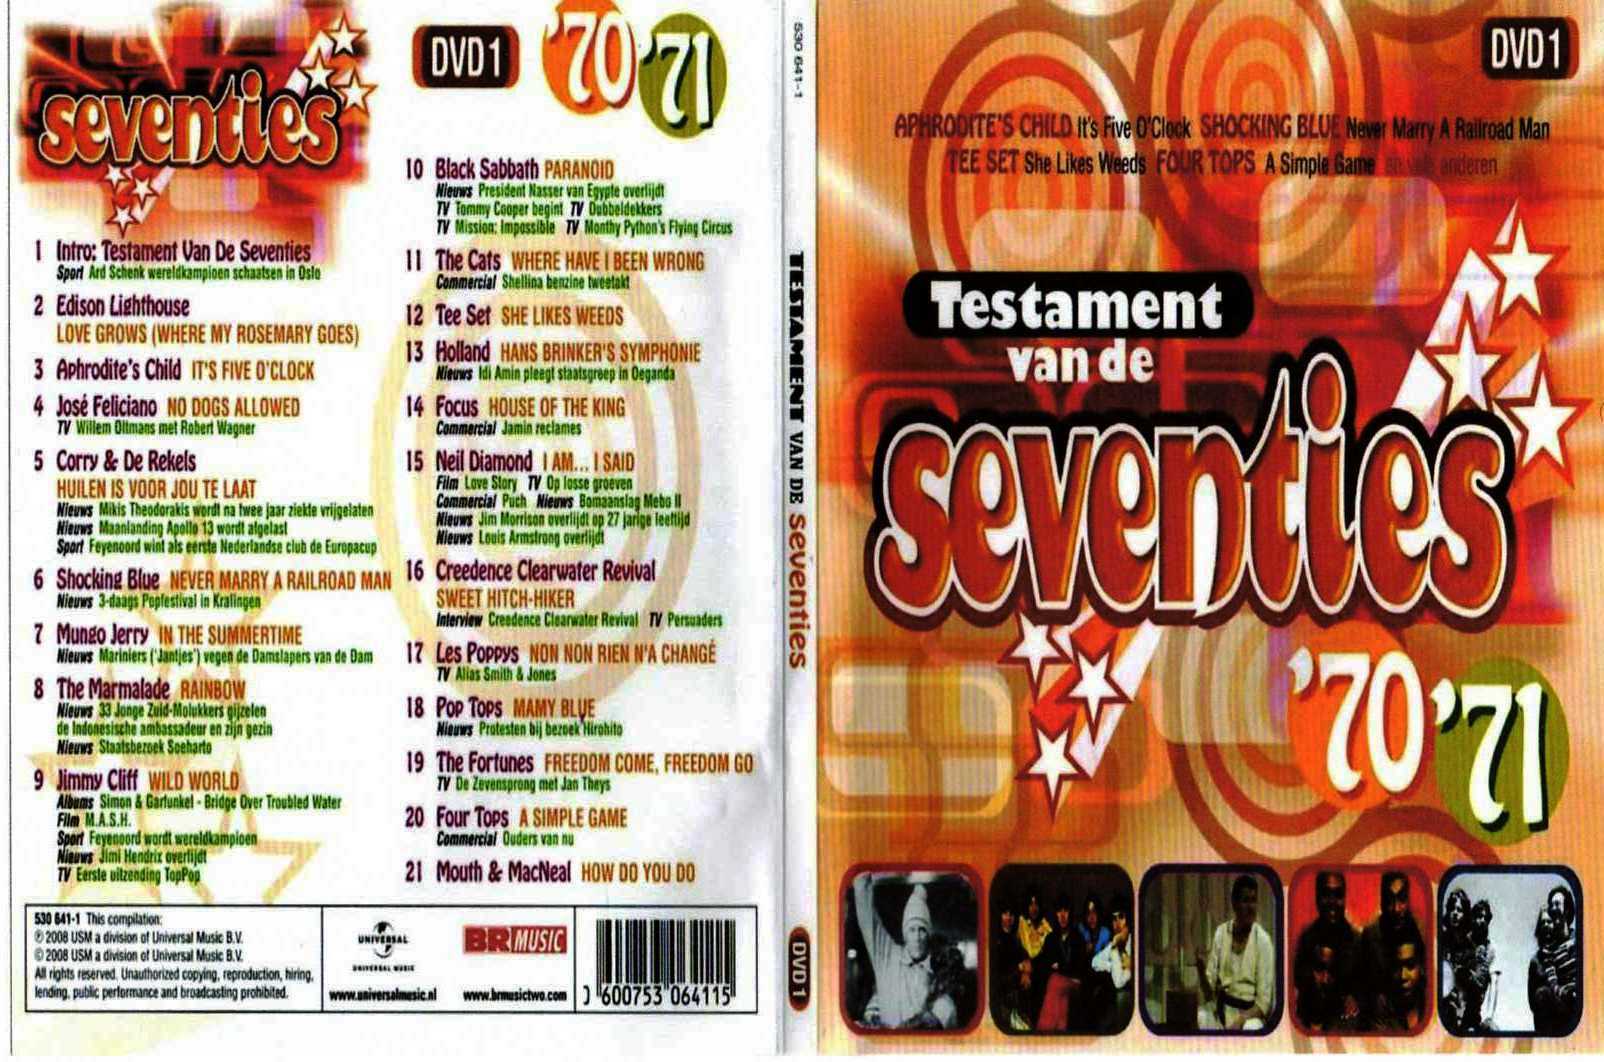 Testament van de seventies (5 x DVD 5 & 10 CD`s)